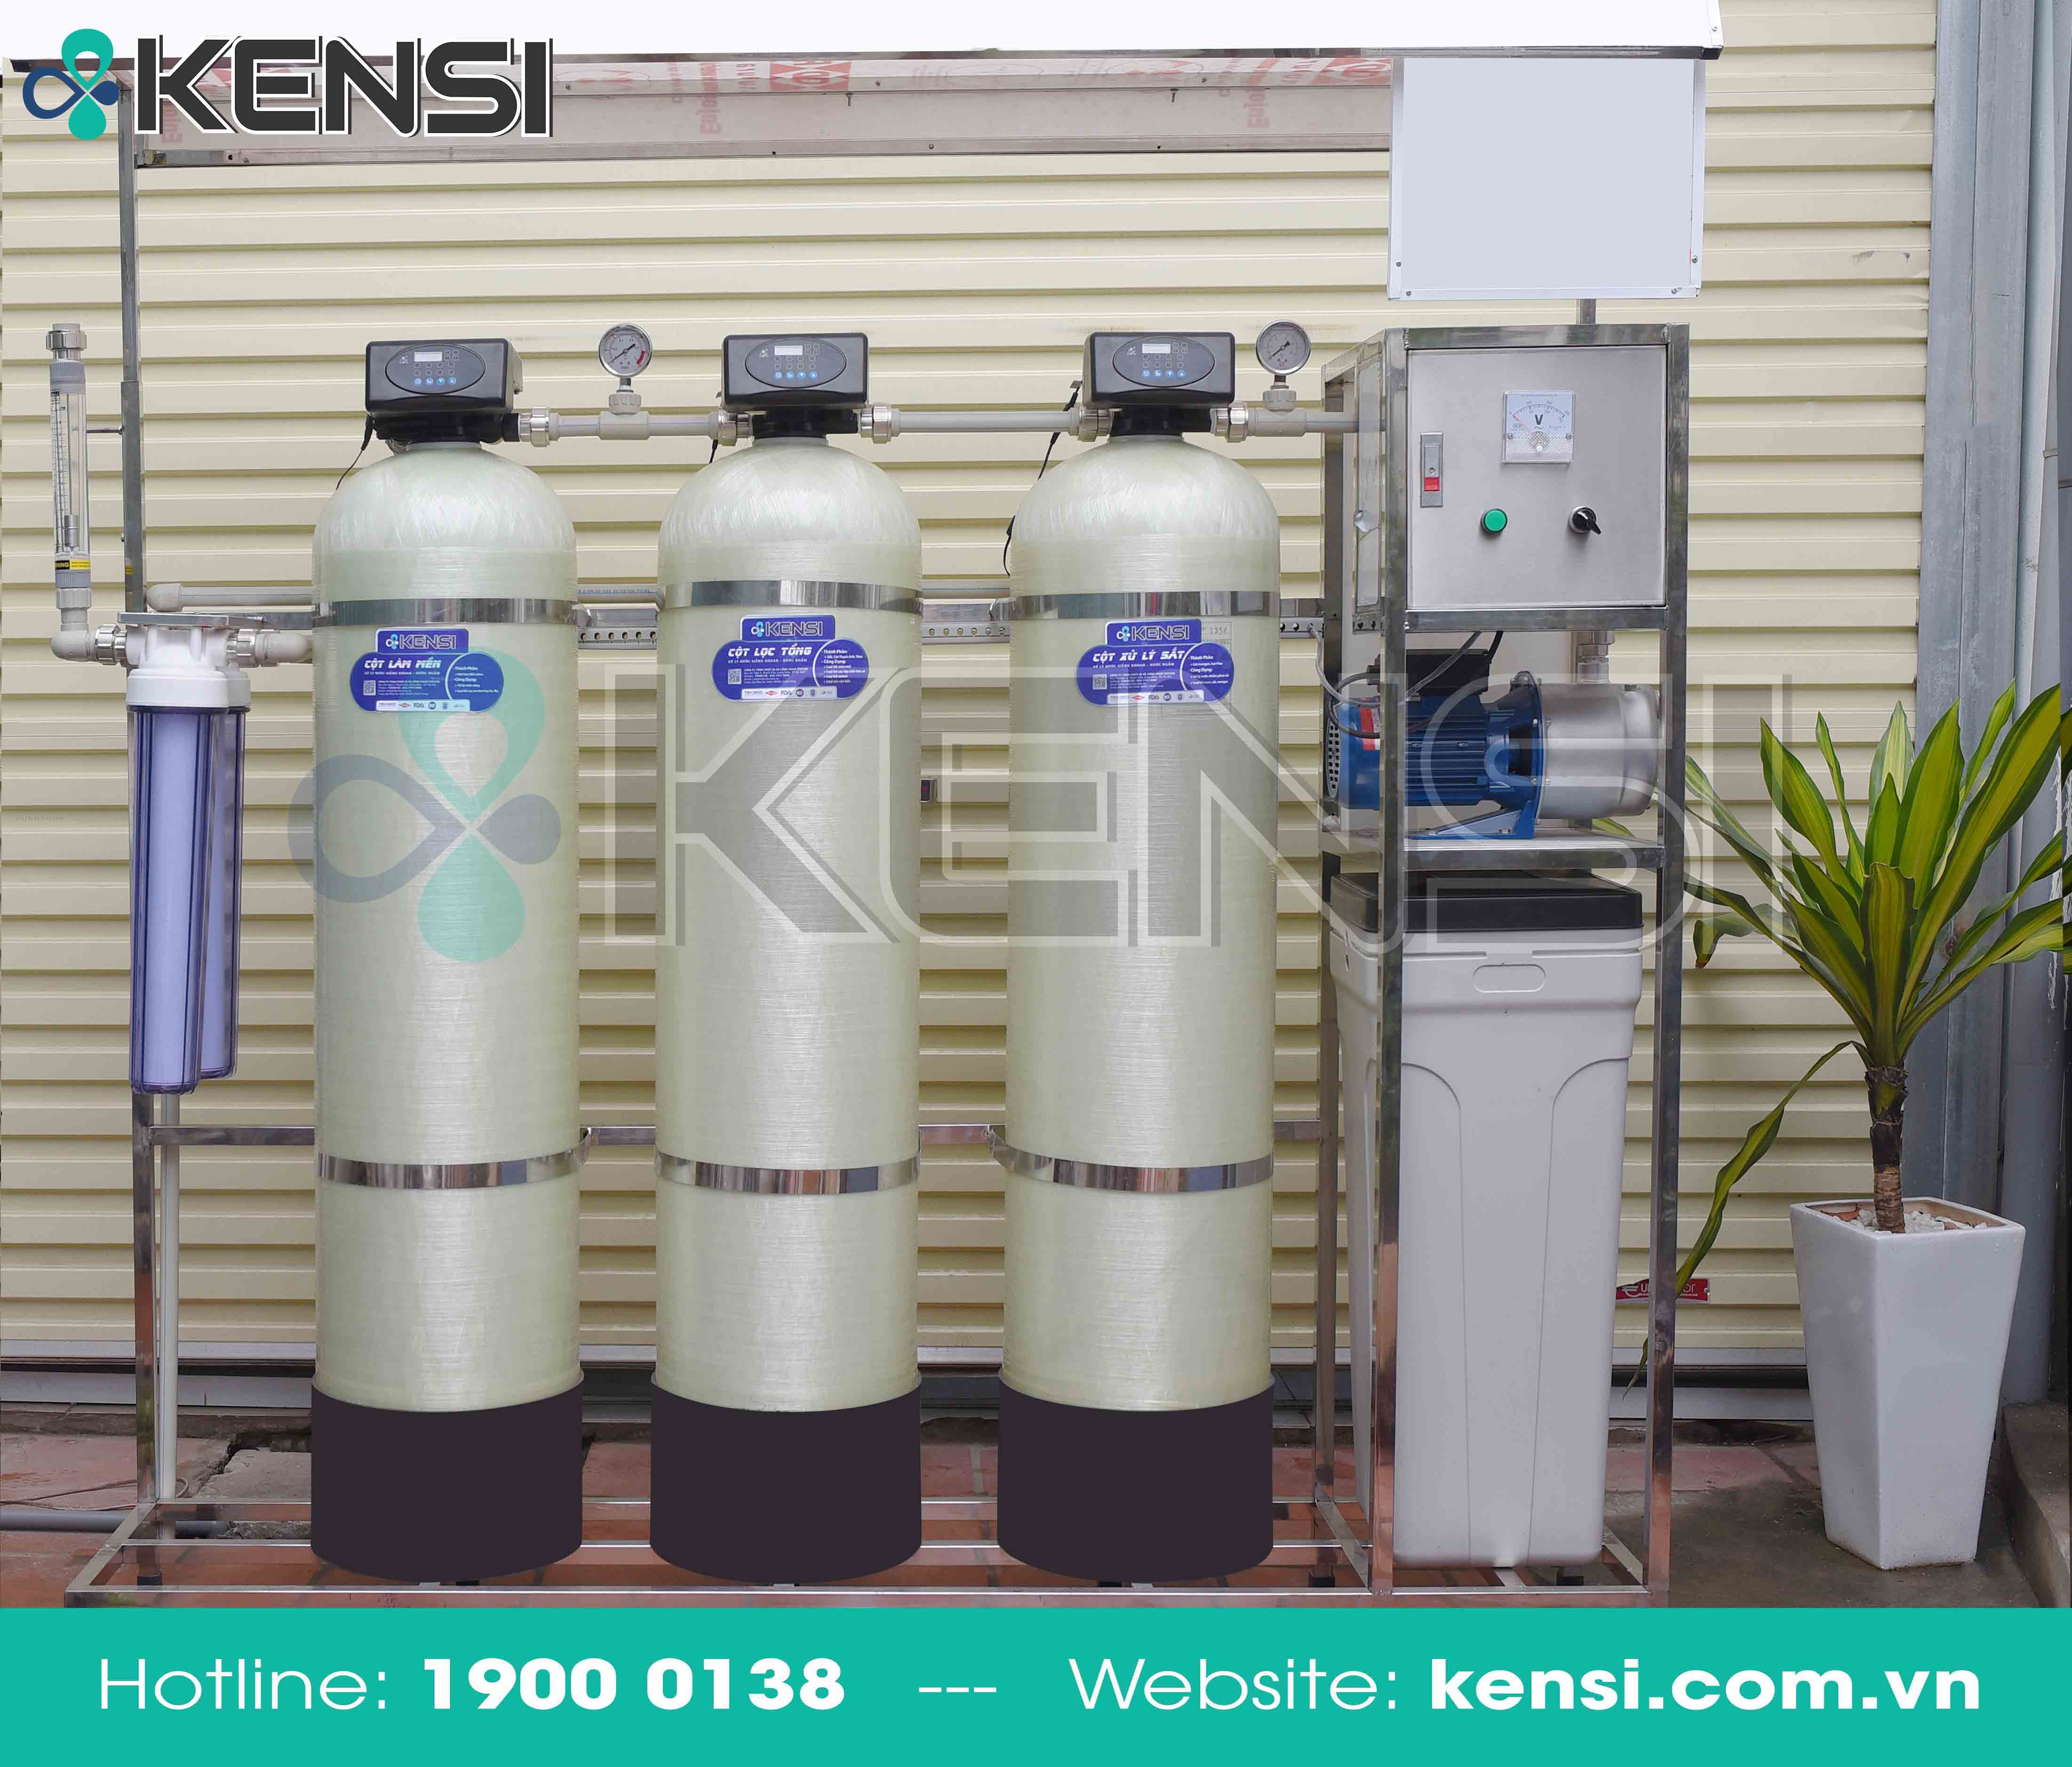 Hệ thống máy lọc nước công nghiệp lọc sạch, cung cấp nguồn nước đủ tiêu chuẩn nước sạch sinh hoạt